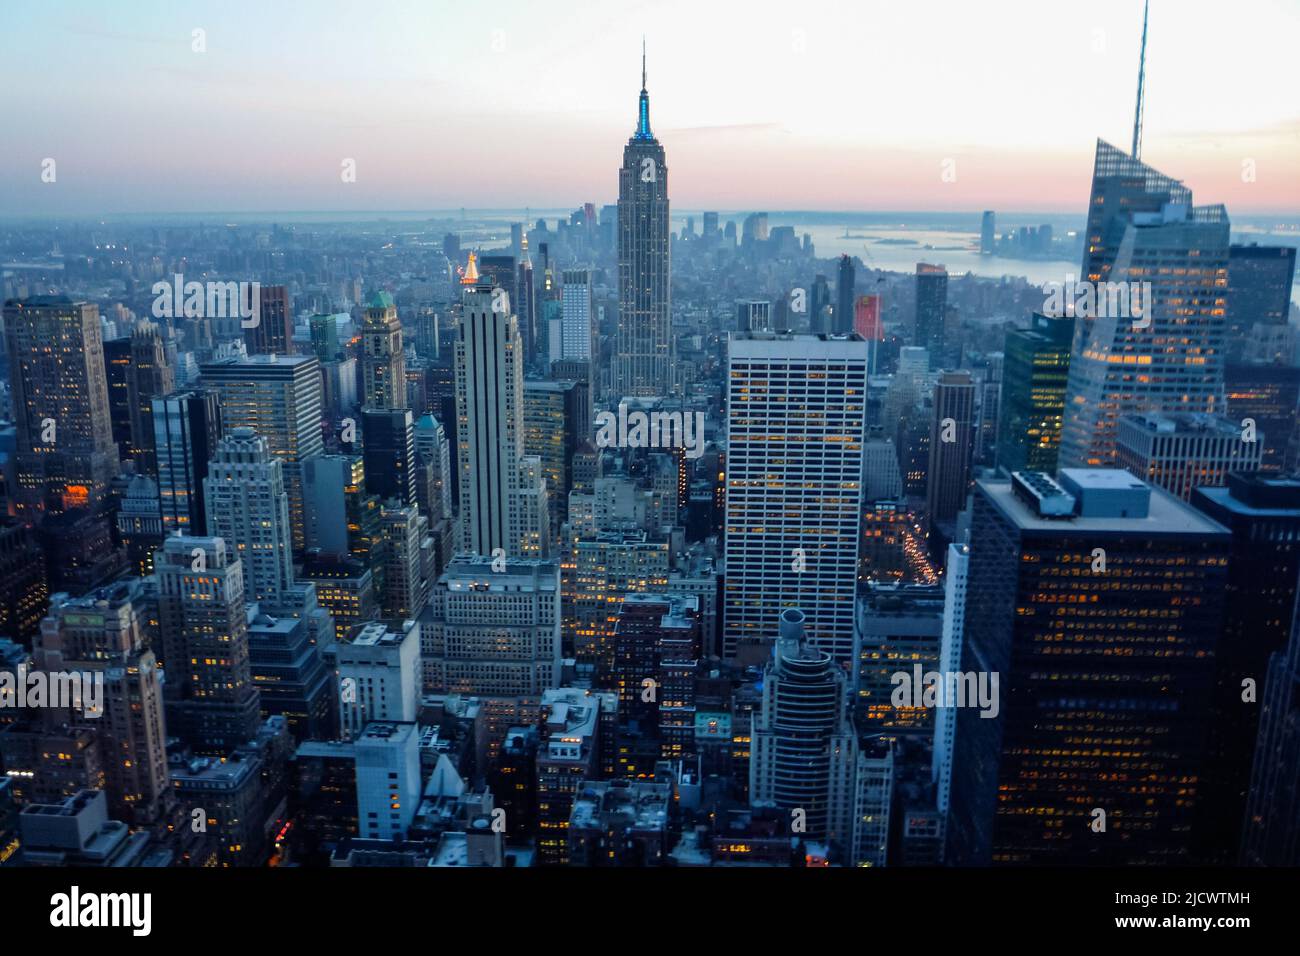 Vista del horizonte de Manhattan al atardecer desde la plataforma de observación Top of the Rock, Nueva York, United Staes Foto de stock